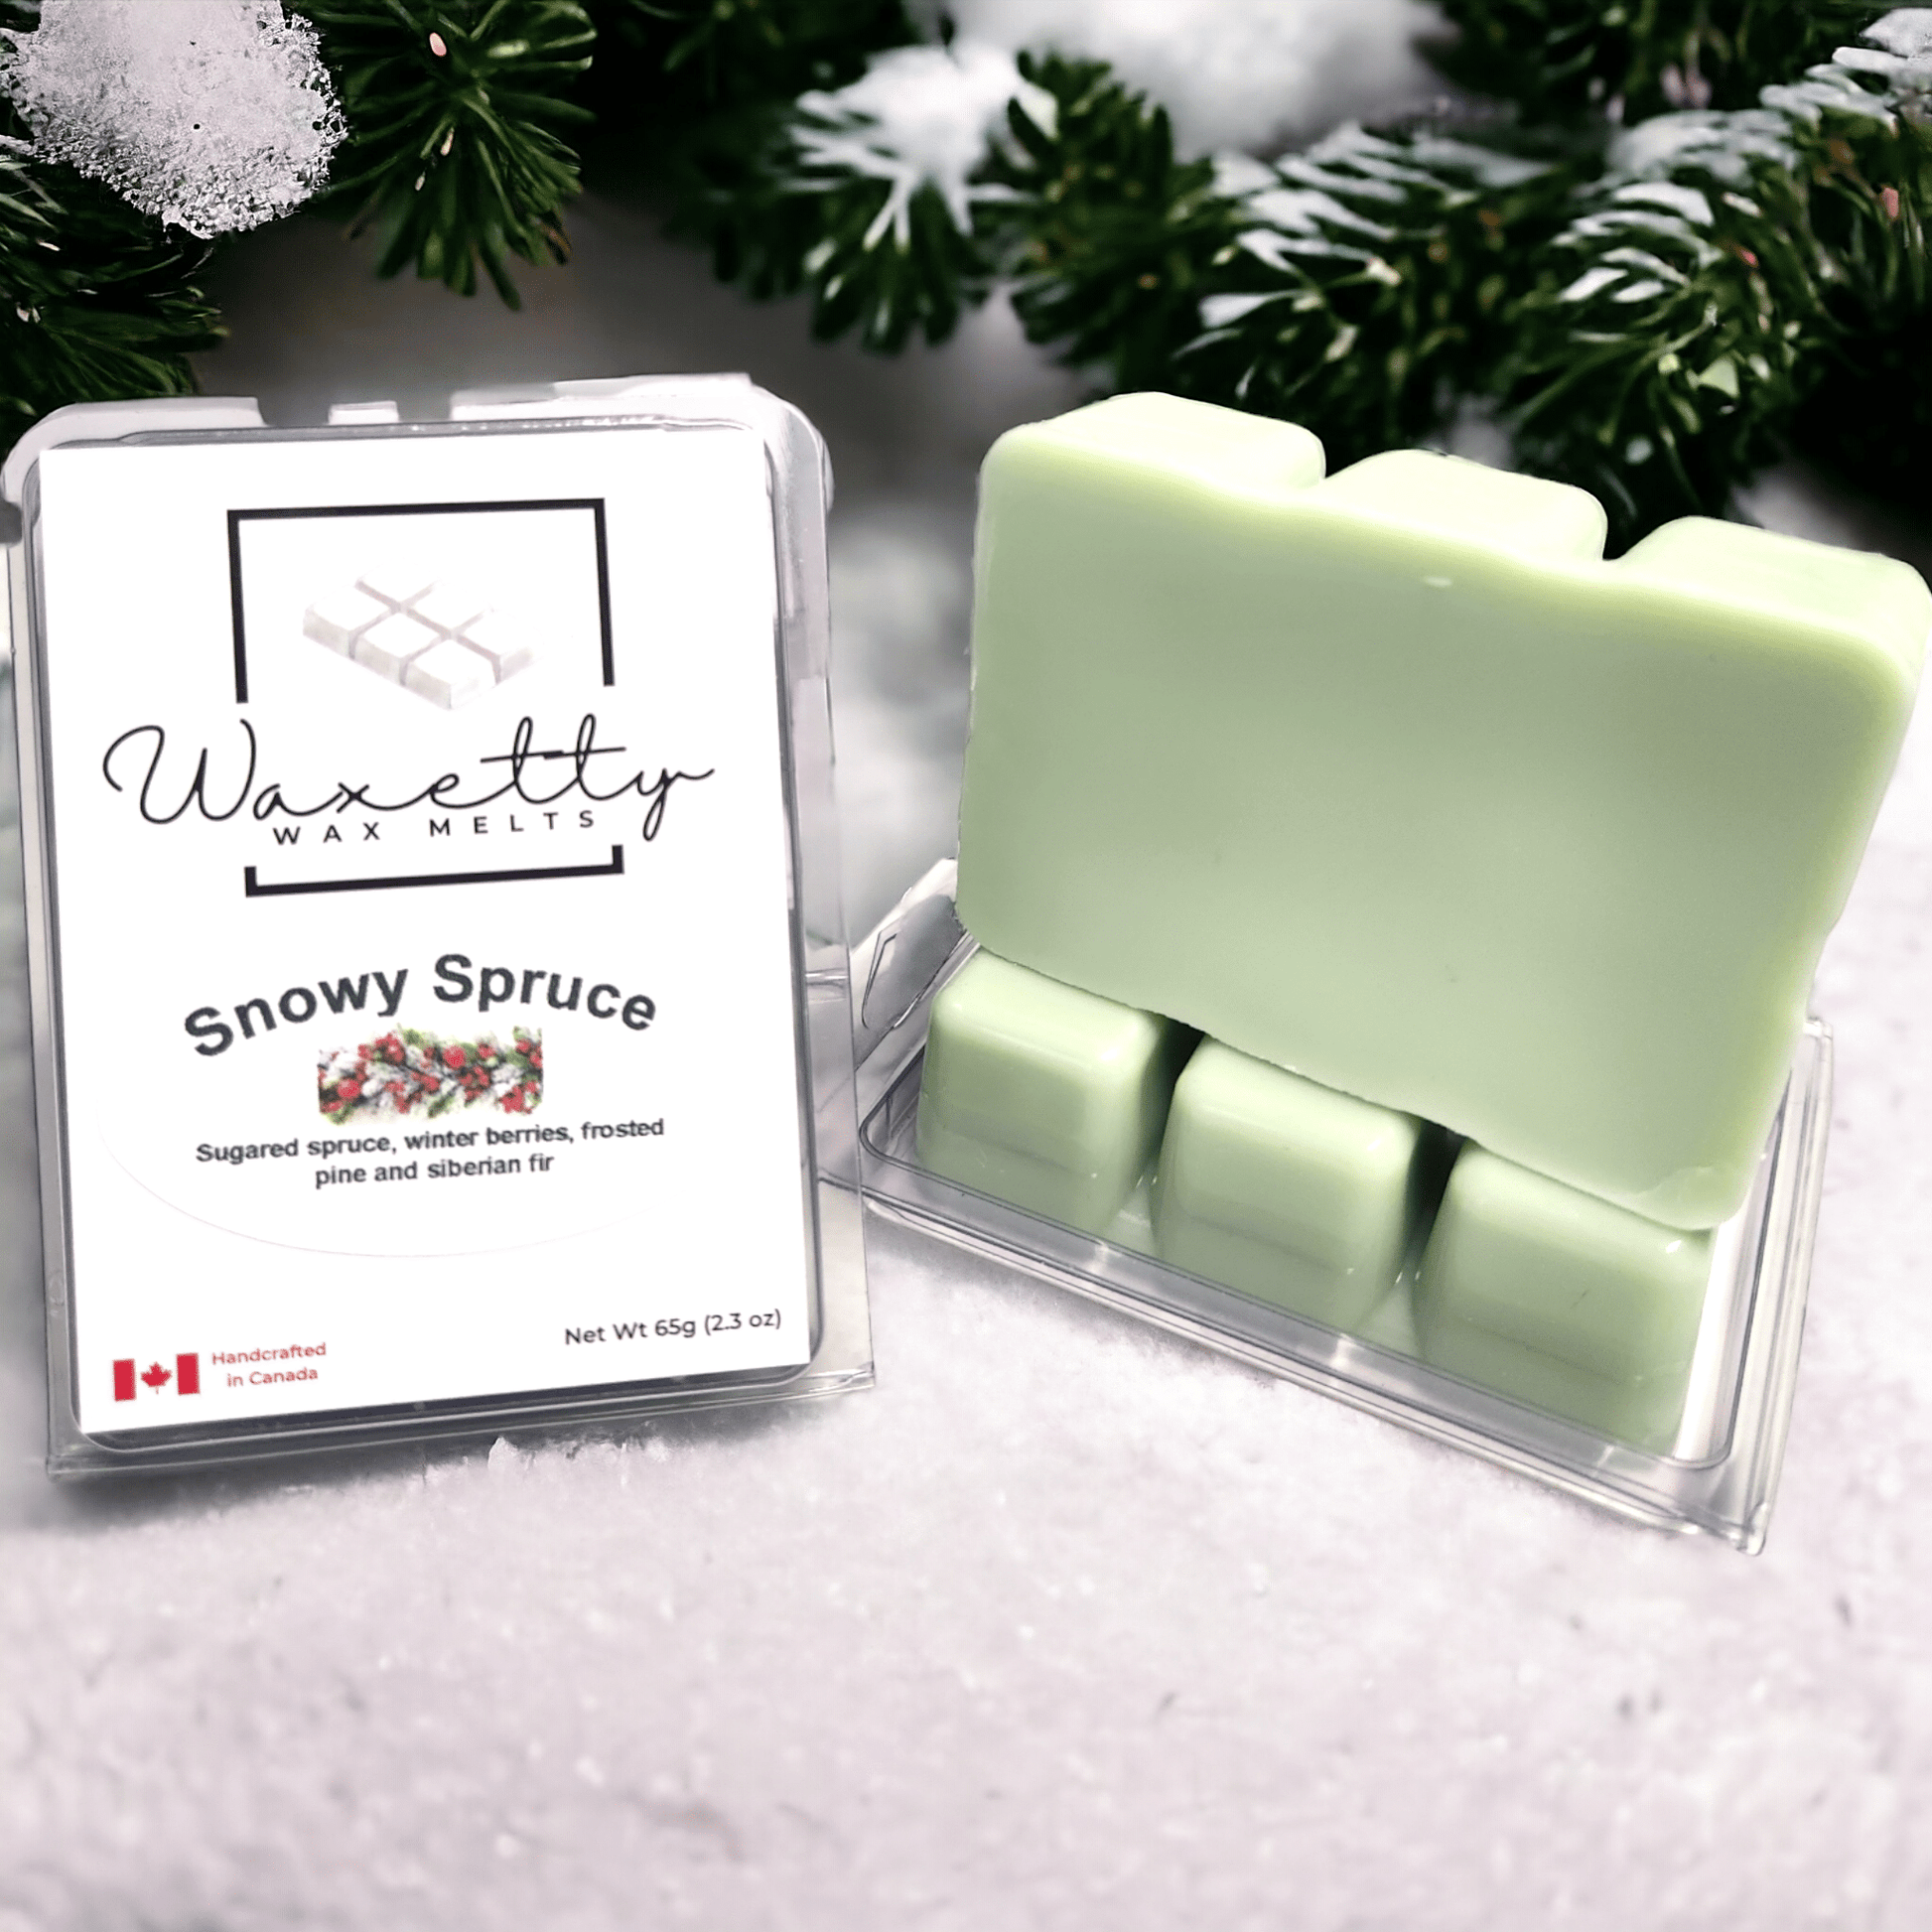 Snowy Spruce - WaxettySnowy SpruceWax Melt